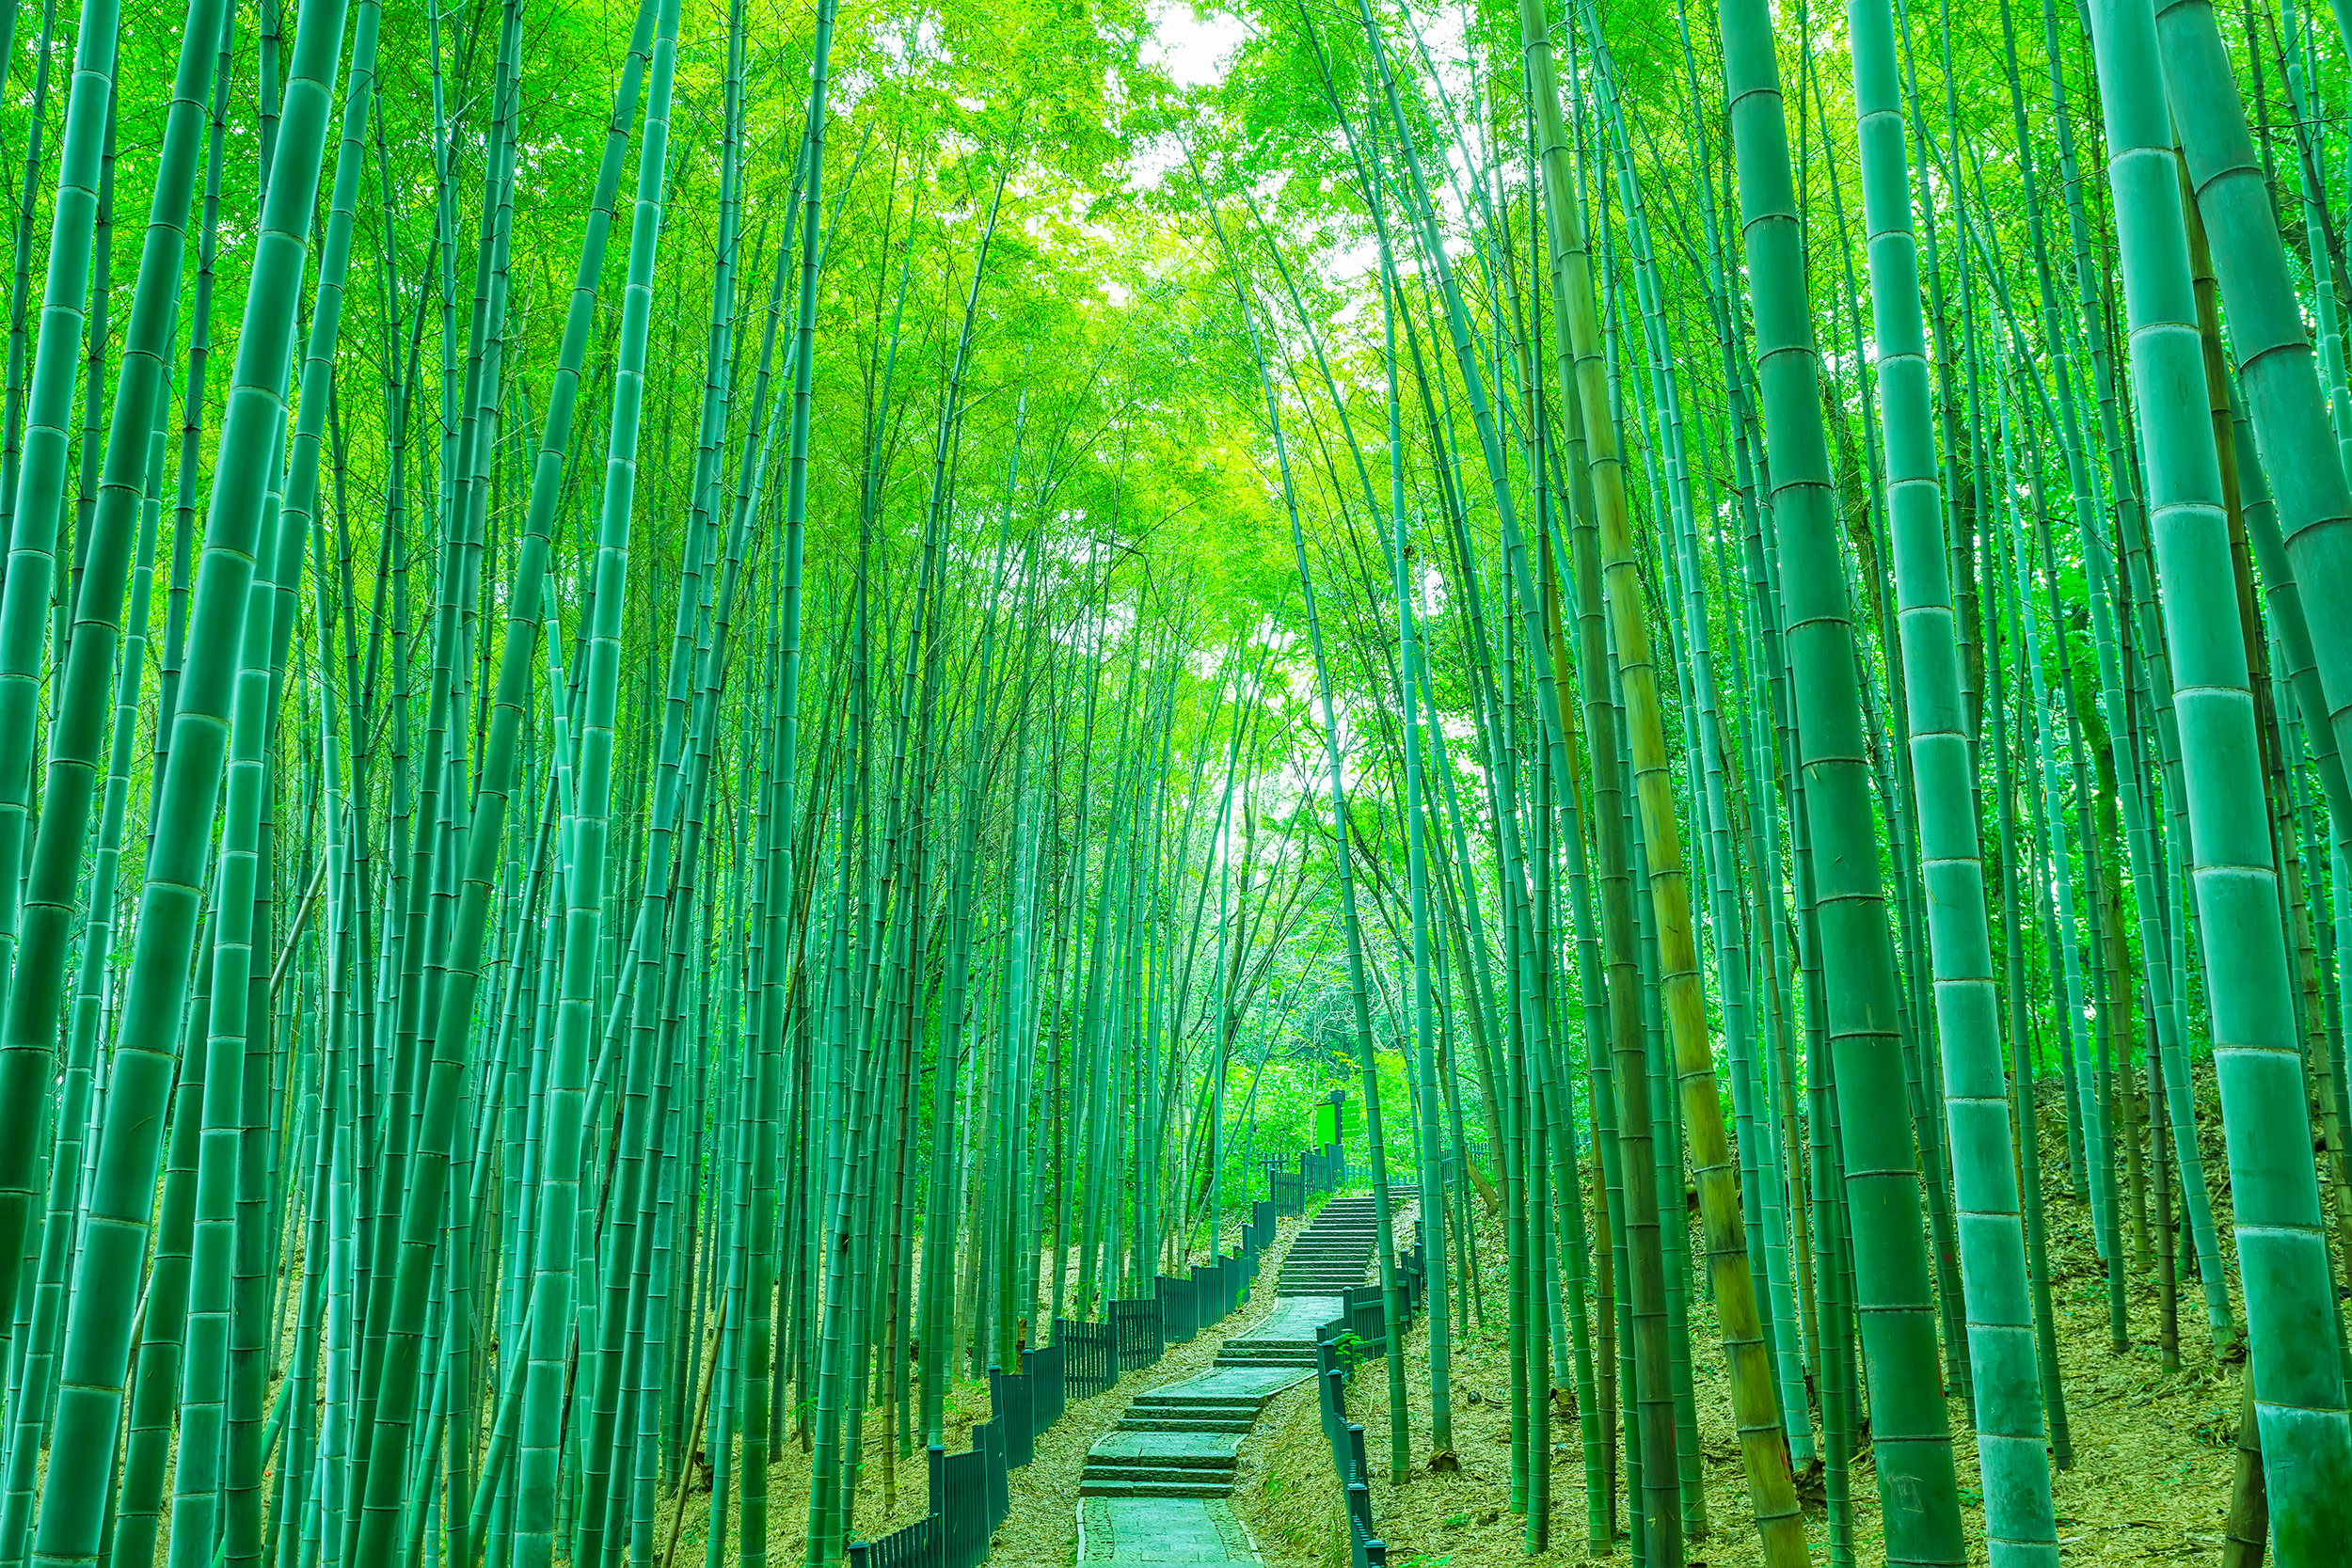 Bamboo path murals, Light bamboo, Serene nature, Tenstickers wallpaper, 2500x1670 HD Desktop